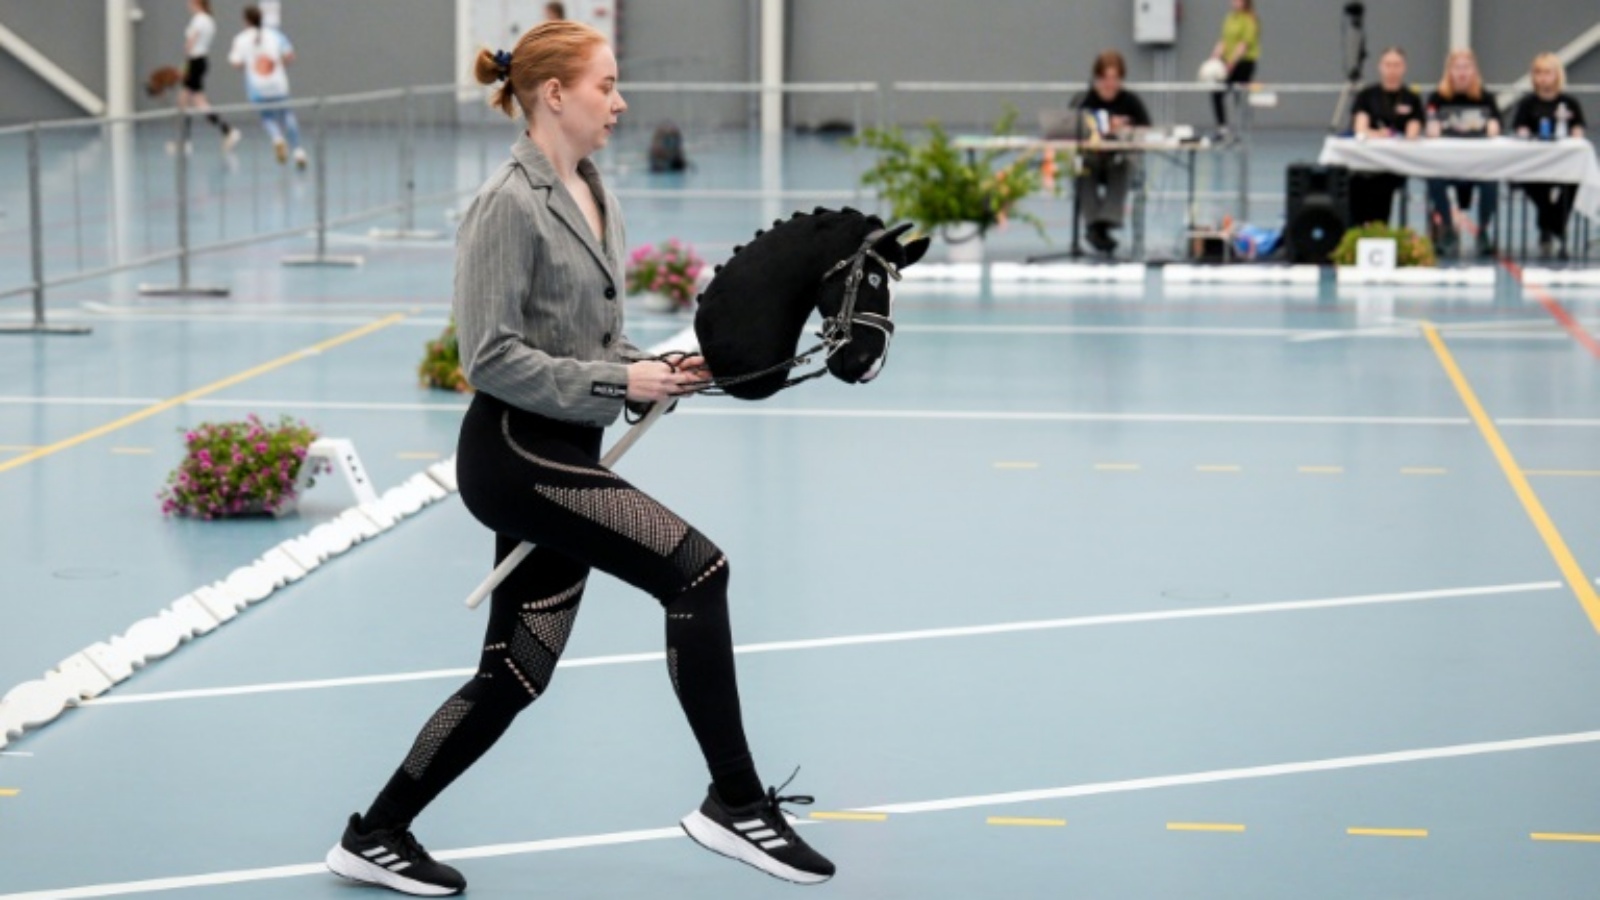 إحدى الفارسات تشارك في بطولة هوبي هورسينغ في فنلندا